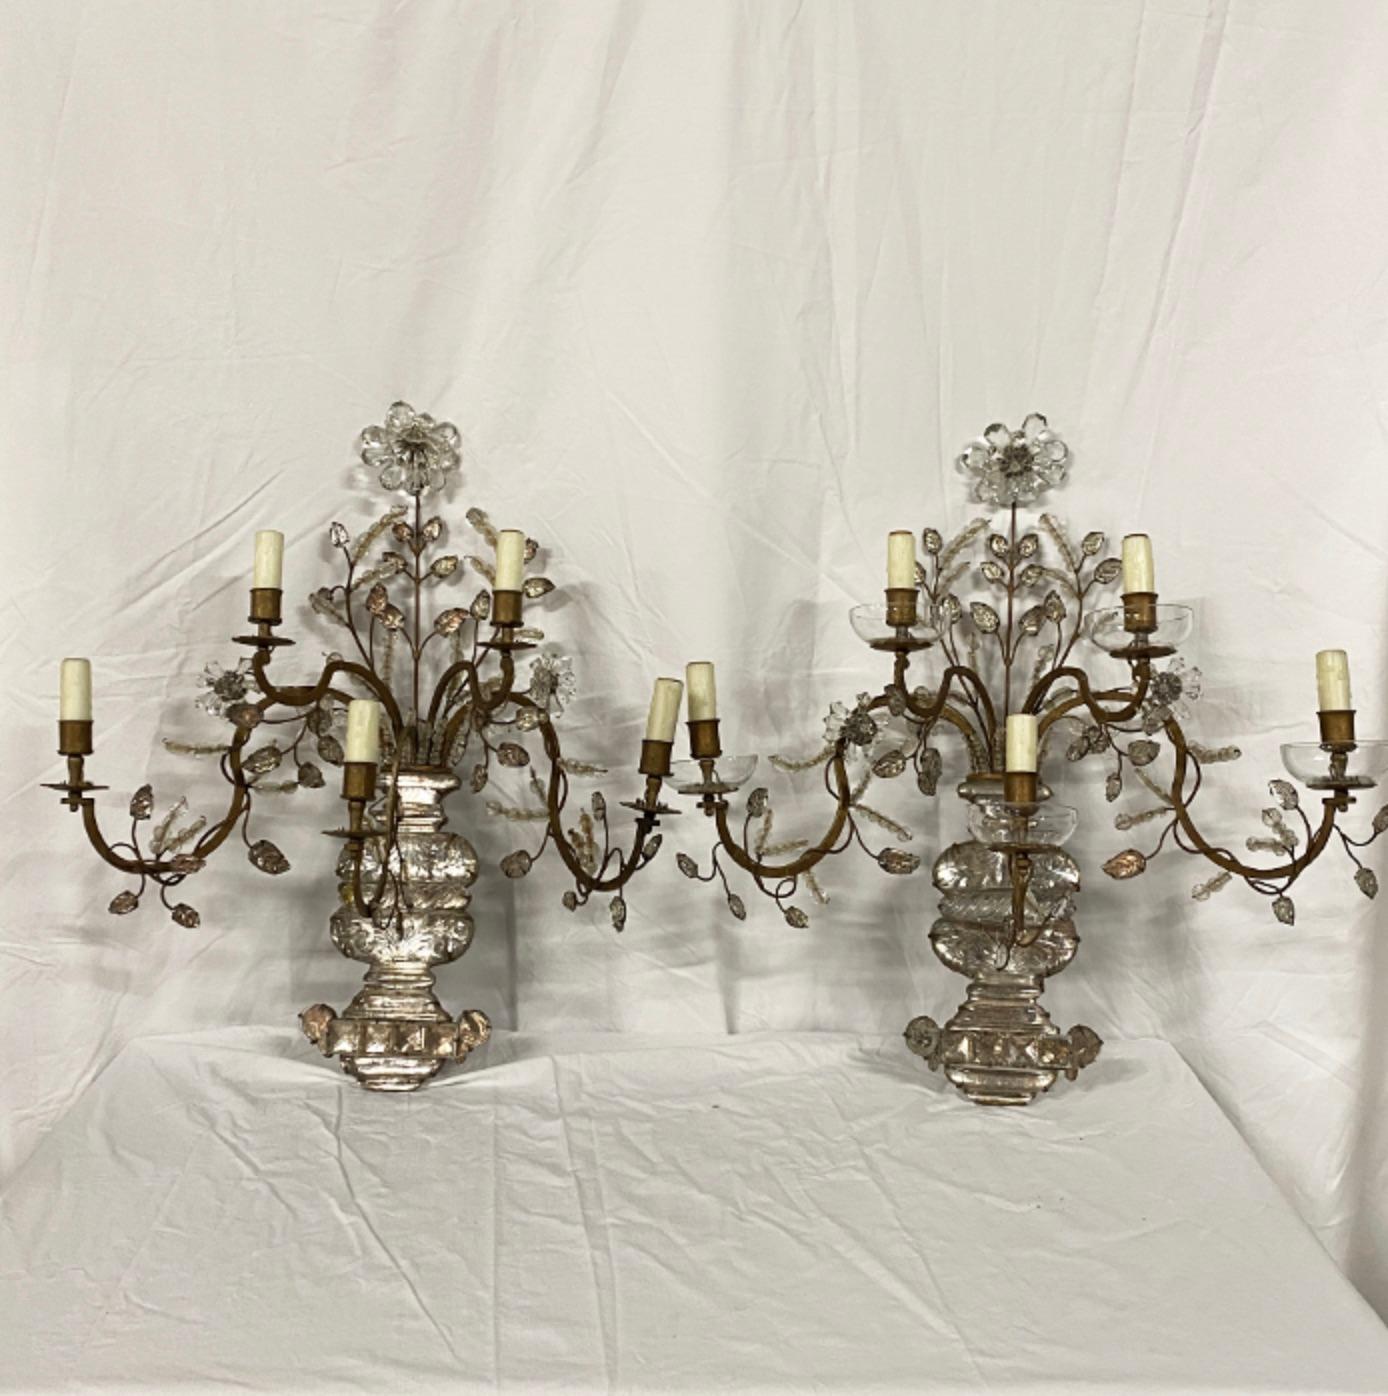 PAAR FRANZÖSISCHER MAISON BAGUES VERGOLDETER METALLWANDLEUCHTER

Paar Französisch Maison Bagues Vergoldetes Metall und Glas fünf Licht Wandleuchter mit einem Spray von Blättern und Blumen aus einer Vase Frankreich, um 1960